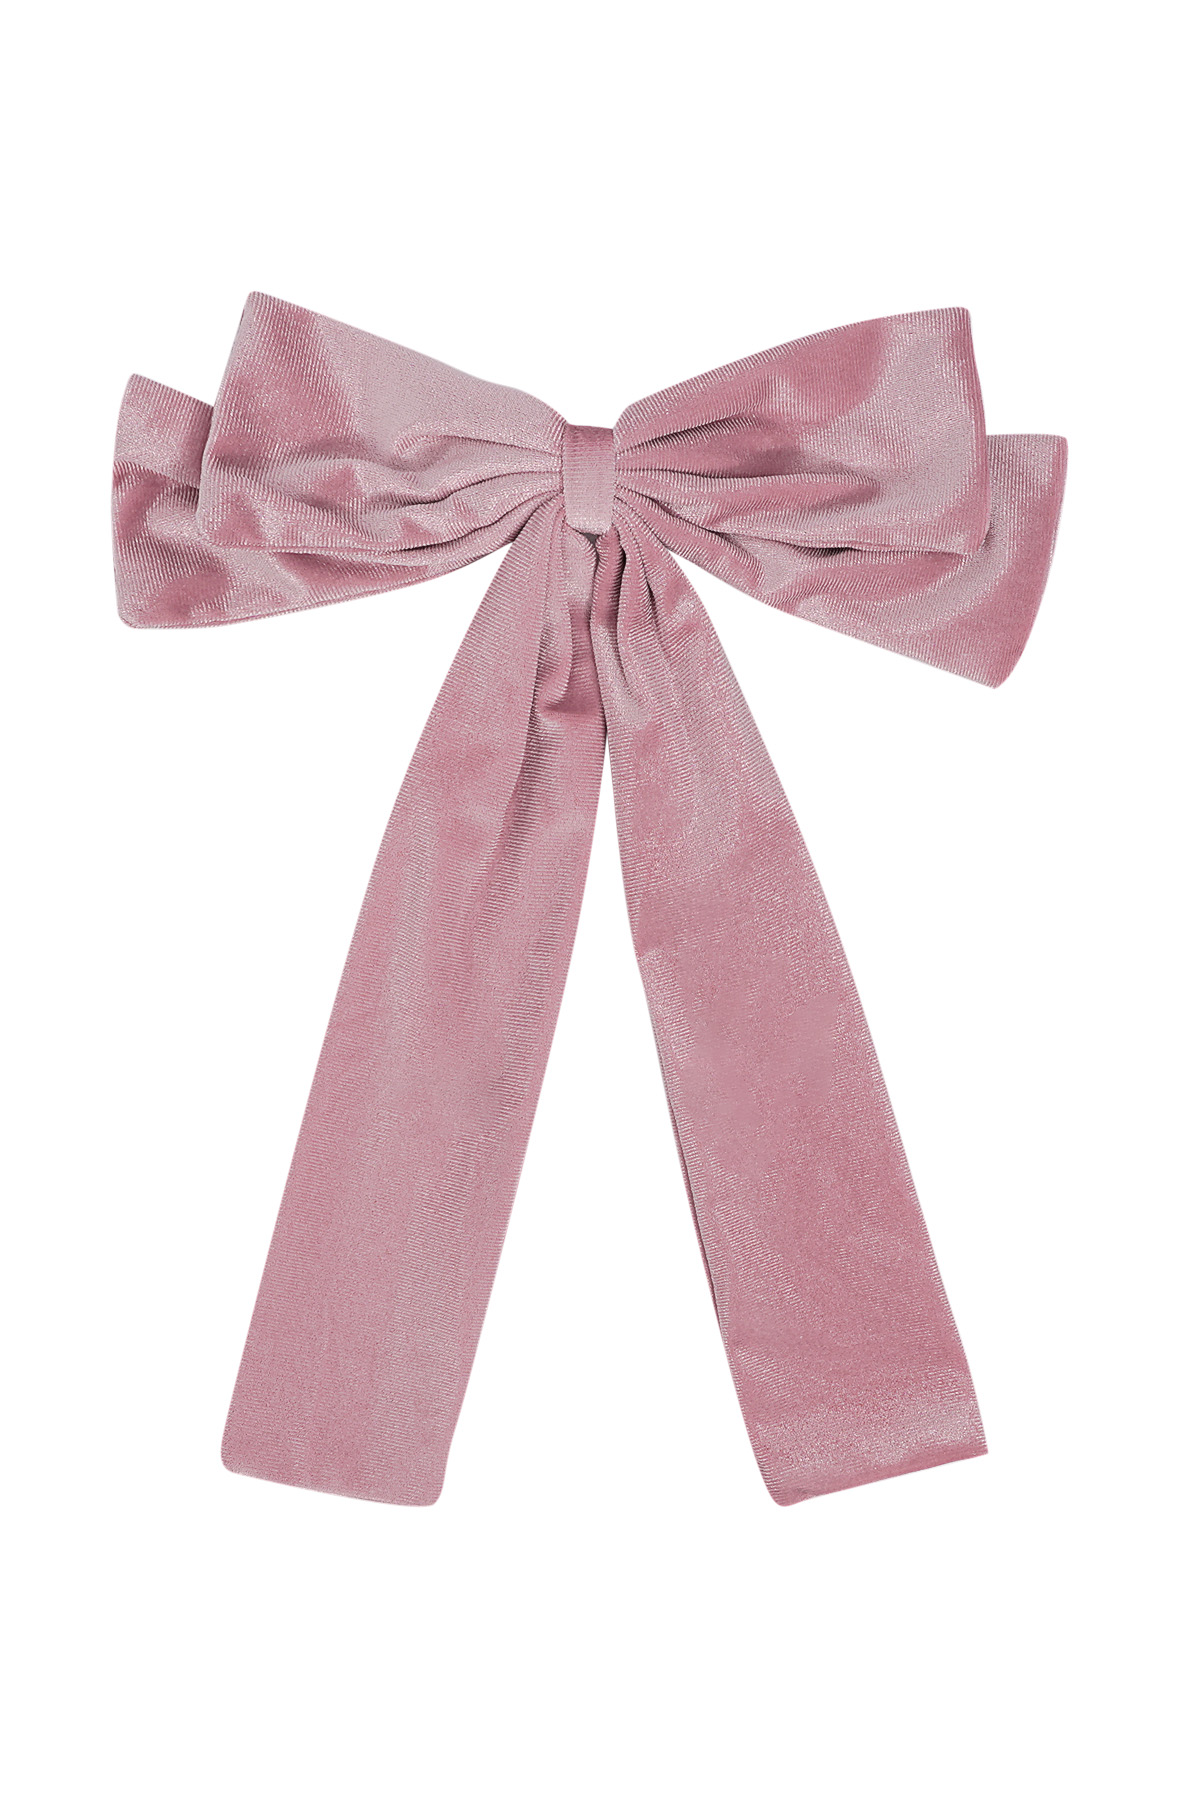 Cute hair bow - pink